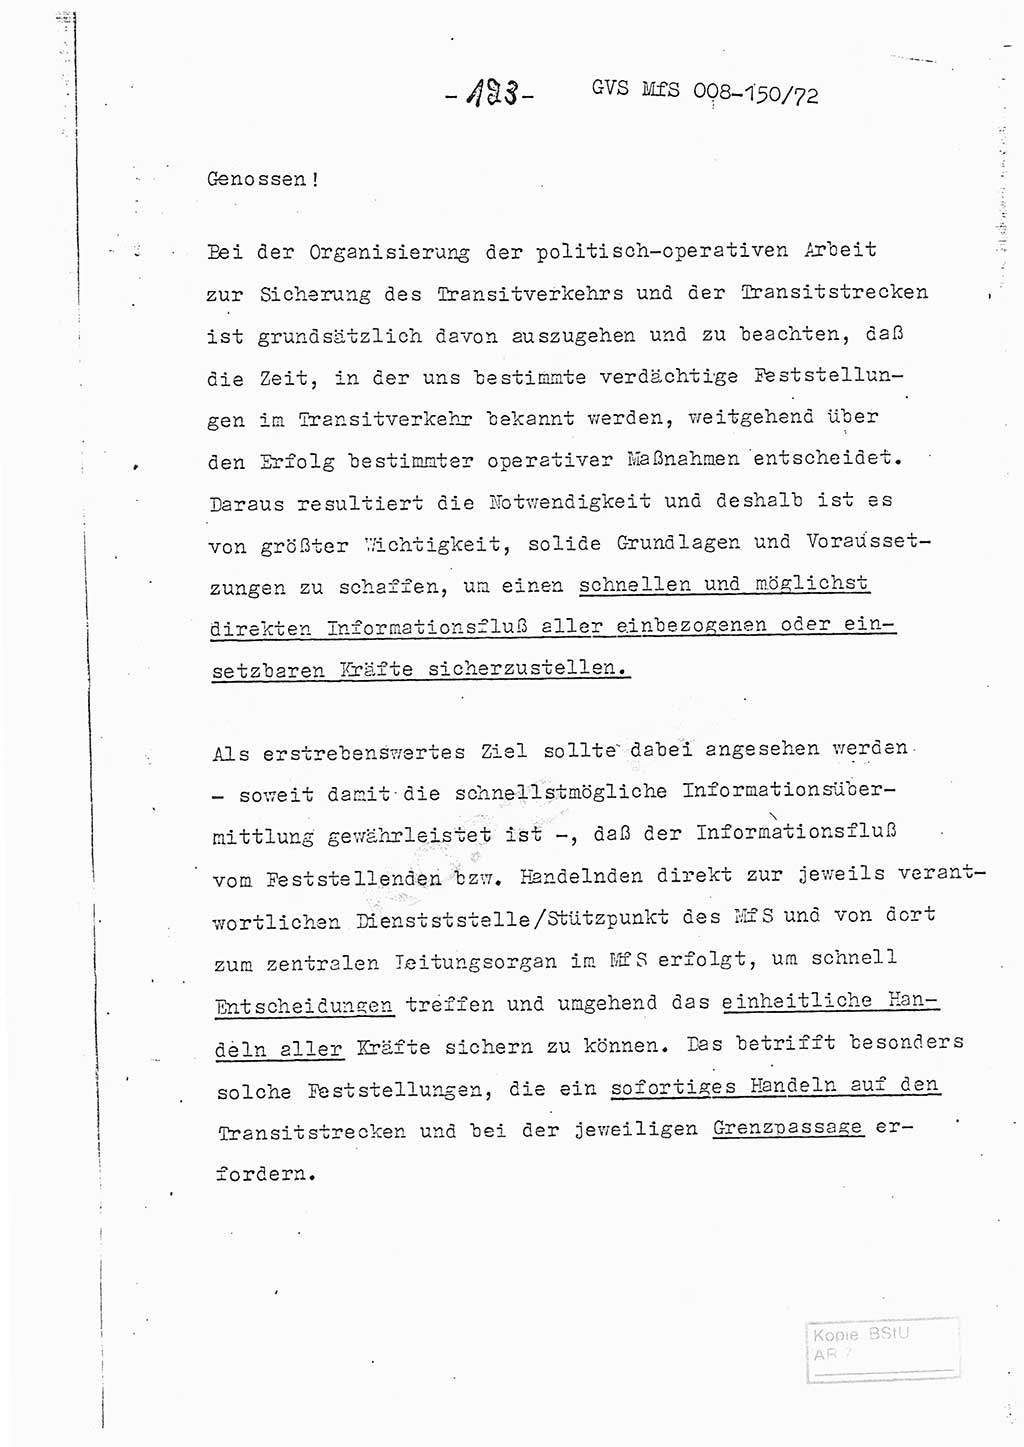 Referat (Entwurf) des Genossen Minister (Generaloberst Erich Mielke) auf der Dienstkonferenz 1972, Ministerium für Staatssicherheit (MfS) [Deutsche Demokratische Republik (DDR)], Der Minister, Geheime Verschlußsache (GVS) 008-150/72, Berlin 25.2.1972, Seite 123 (Ref. Entw. DK MfS DDR Min. GVS 008-150/72 1972, S. 123)